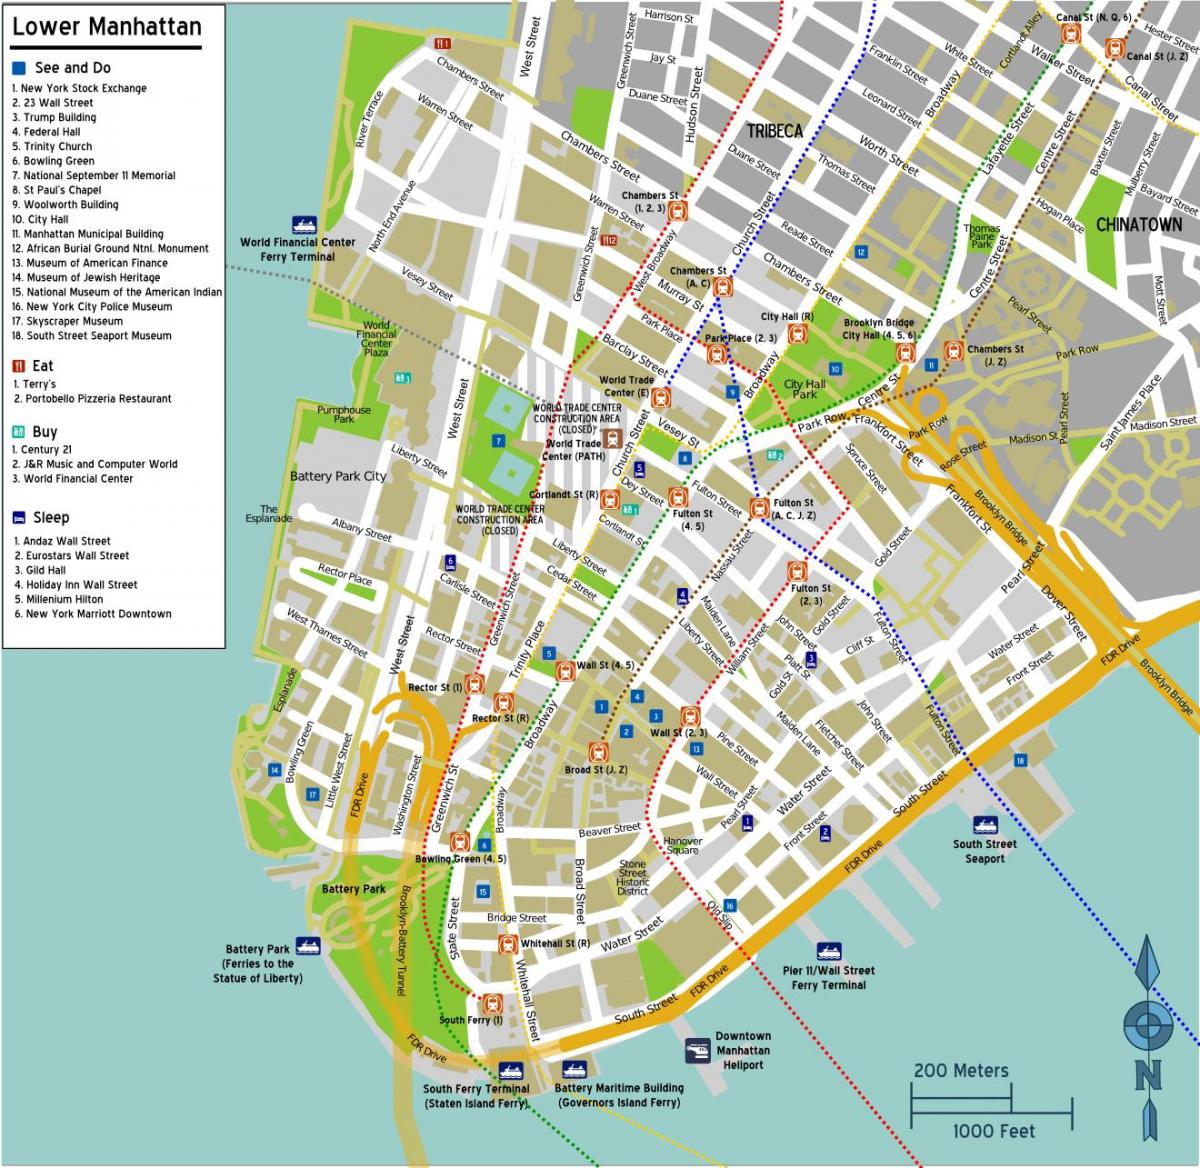 zemljevid spodnji Manhattan z imeni ulic